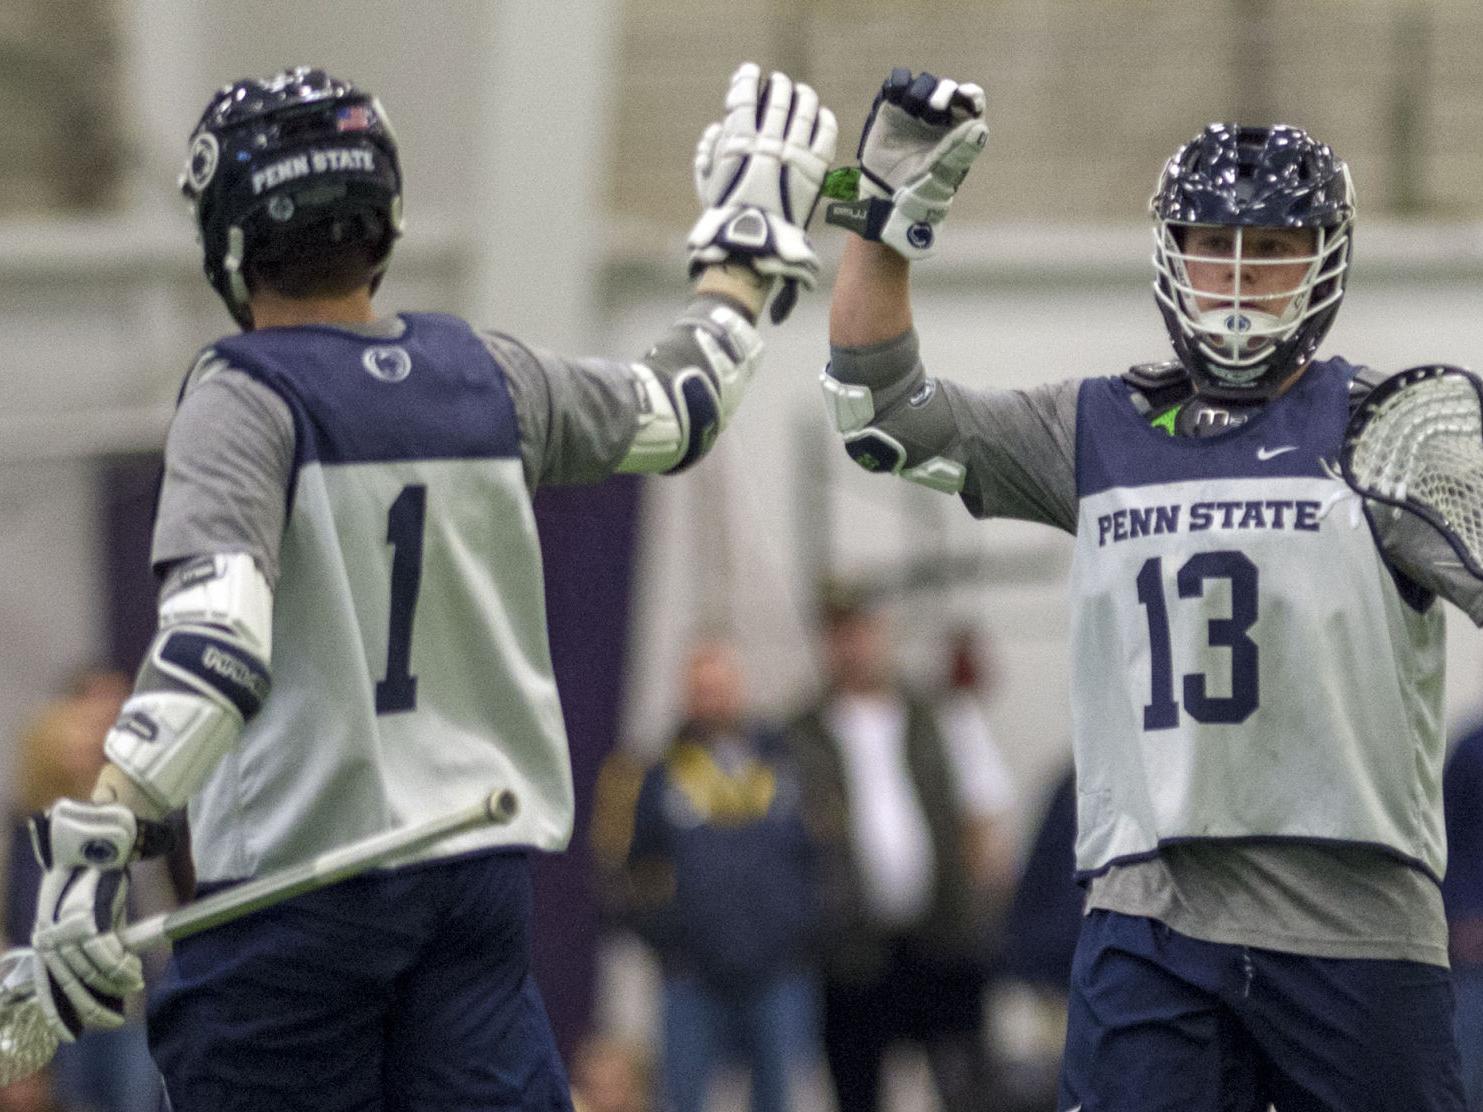 Penn State men's lacrosse makes up for loss of star attackman Grant Ament, despite loss to Villanova